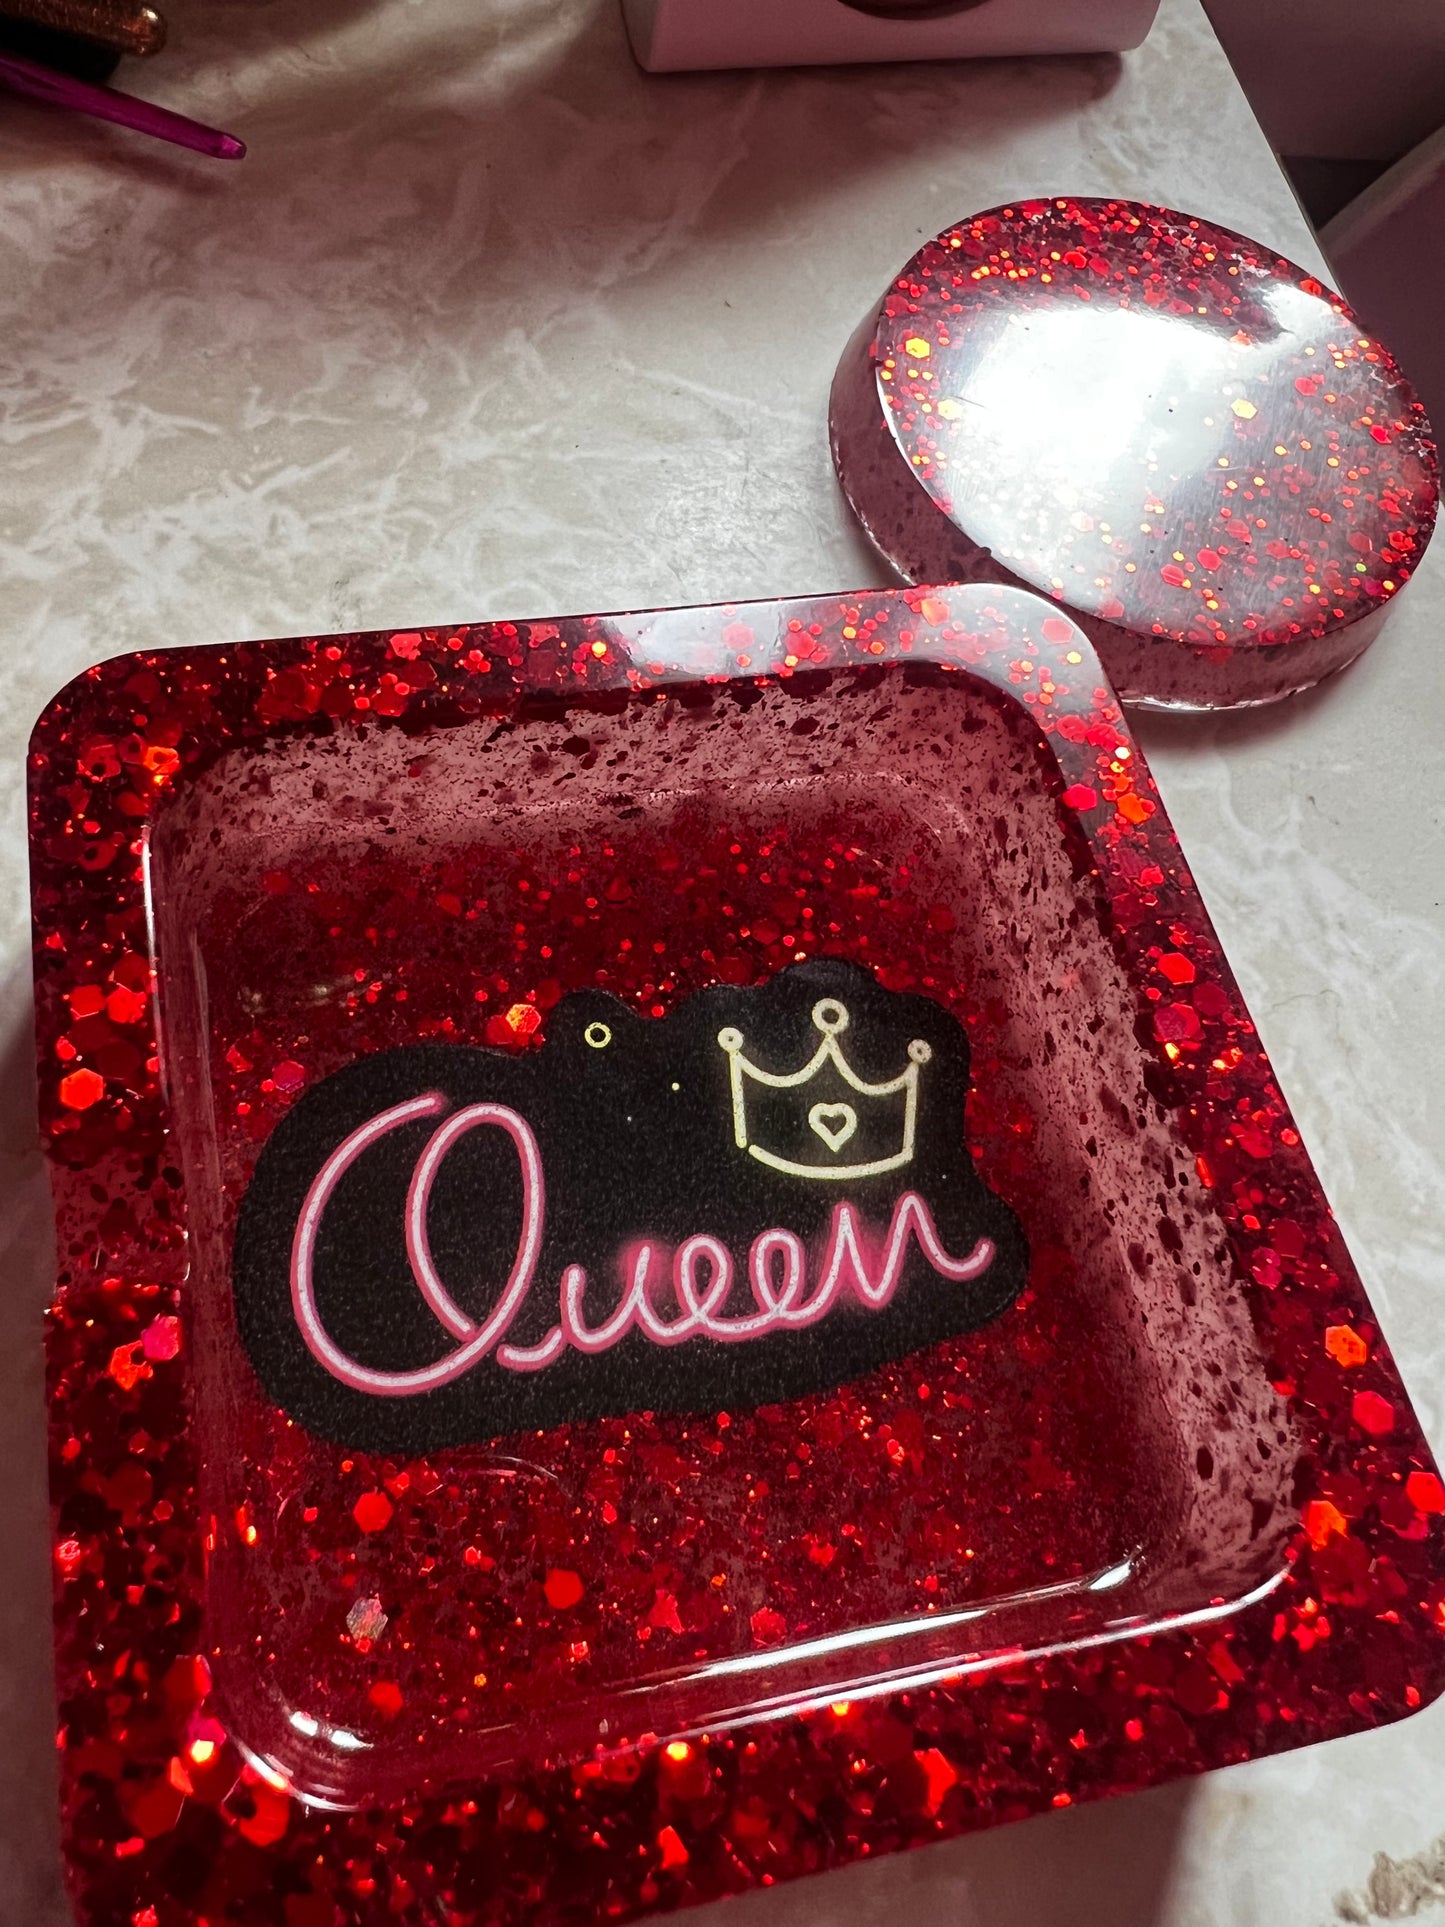 Queen ashtray w/coaster